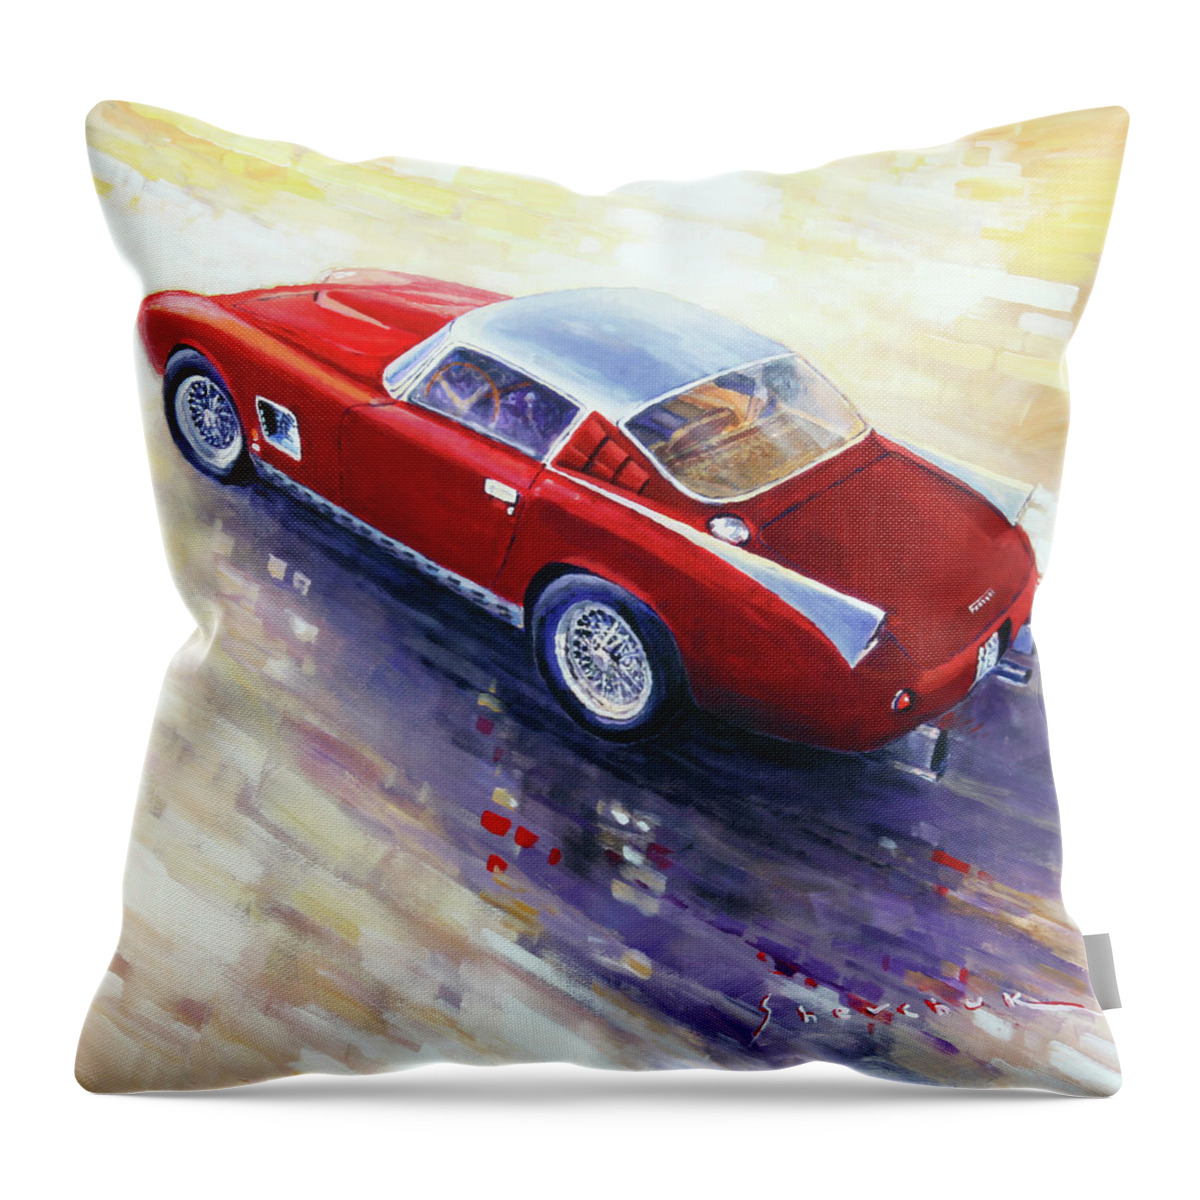 Shevchukart Throw Pillow featuring the painting 1956 Ferrari 410 SuperAmerica Scaglietti Series by Yuriy Shevchuk